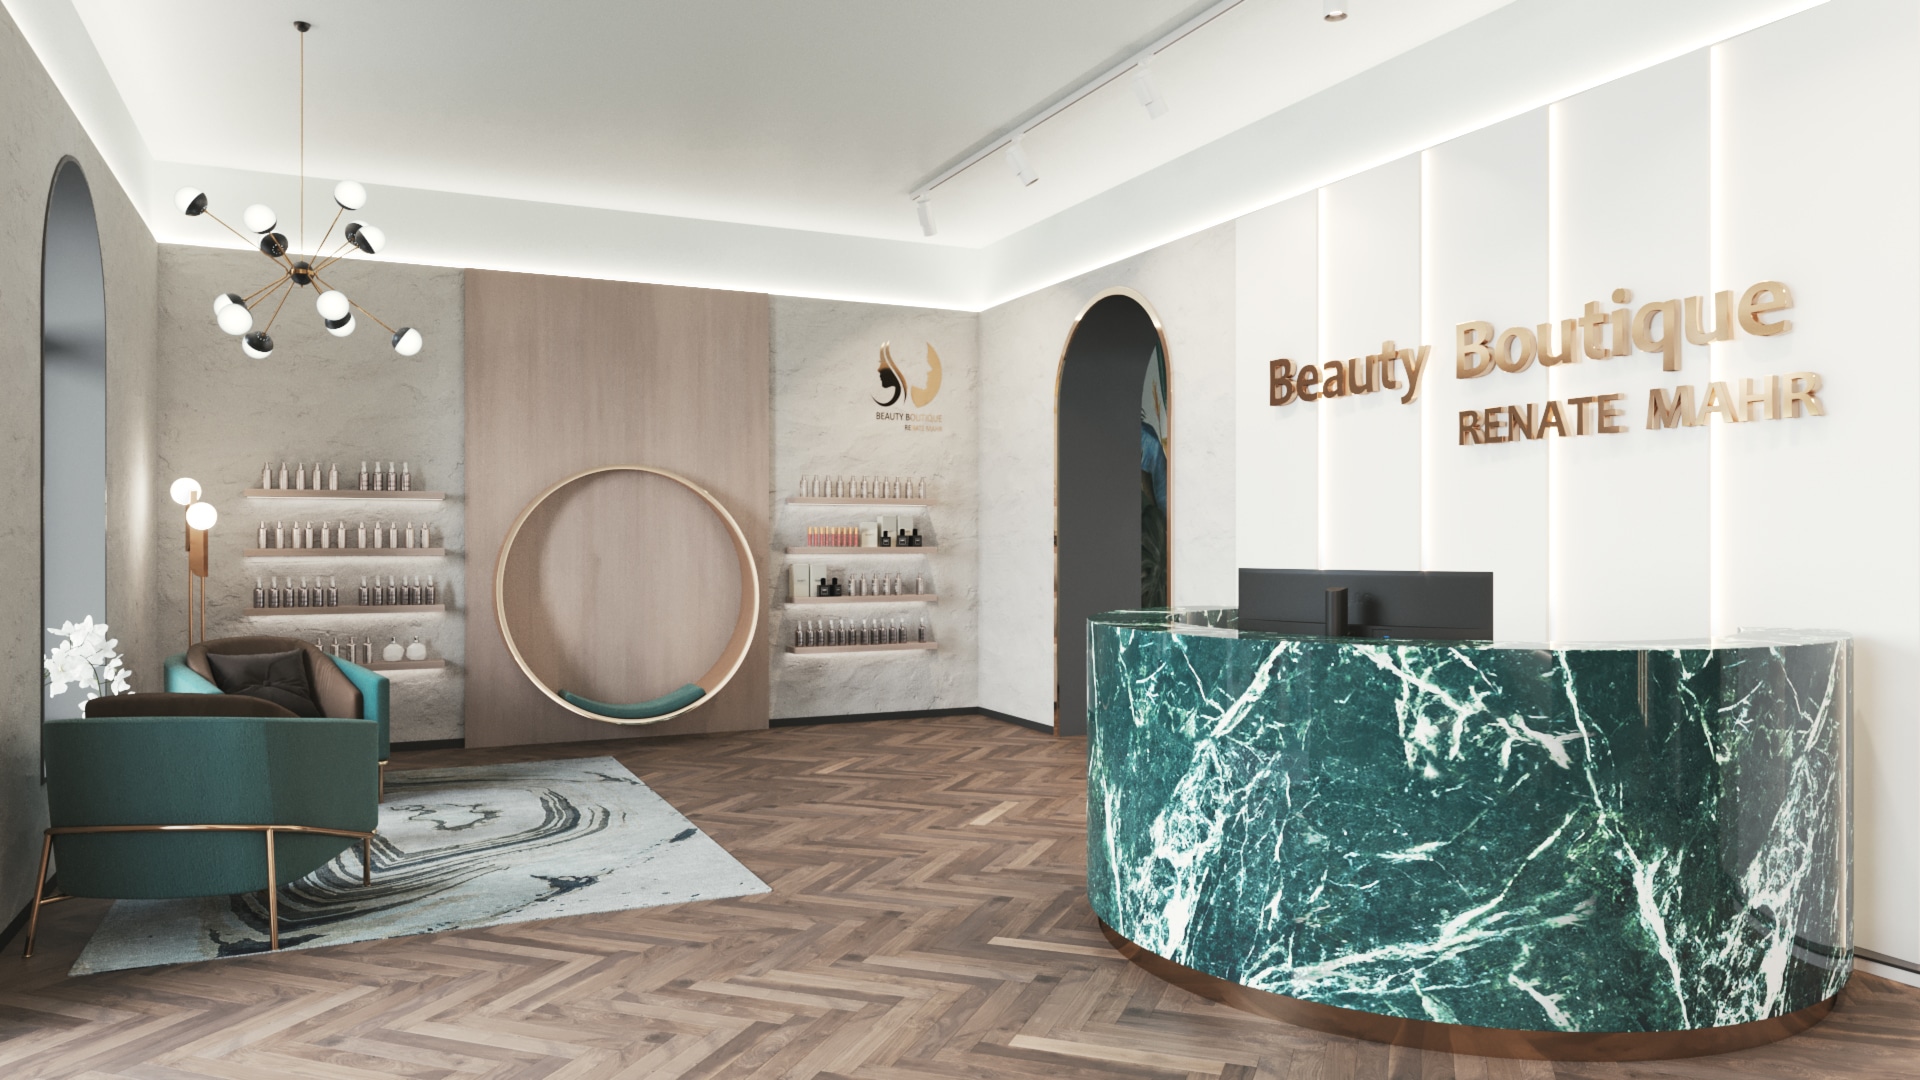 Ladenbau München - Projekt Beauty Boutique Renate Mahr